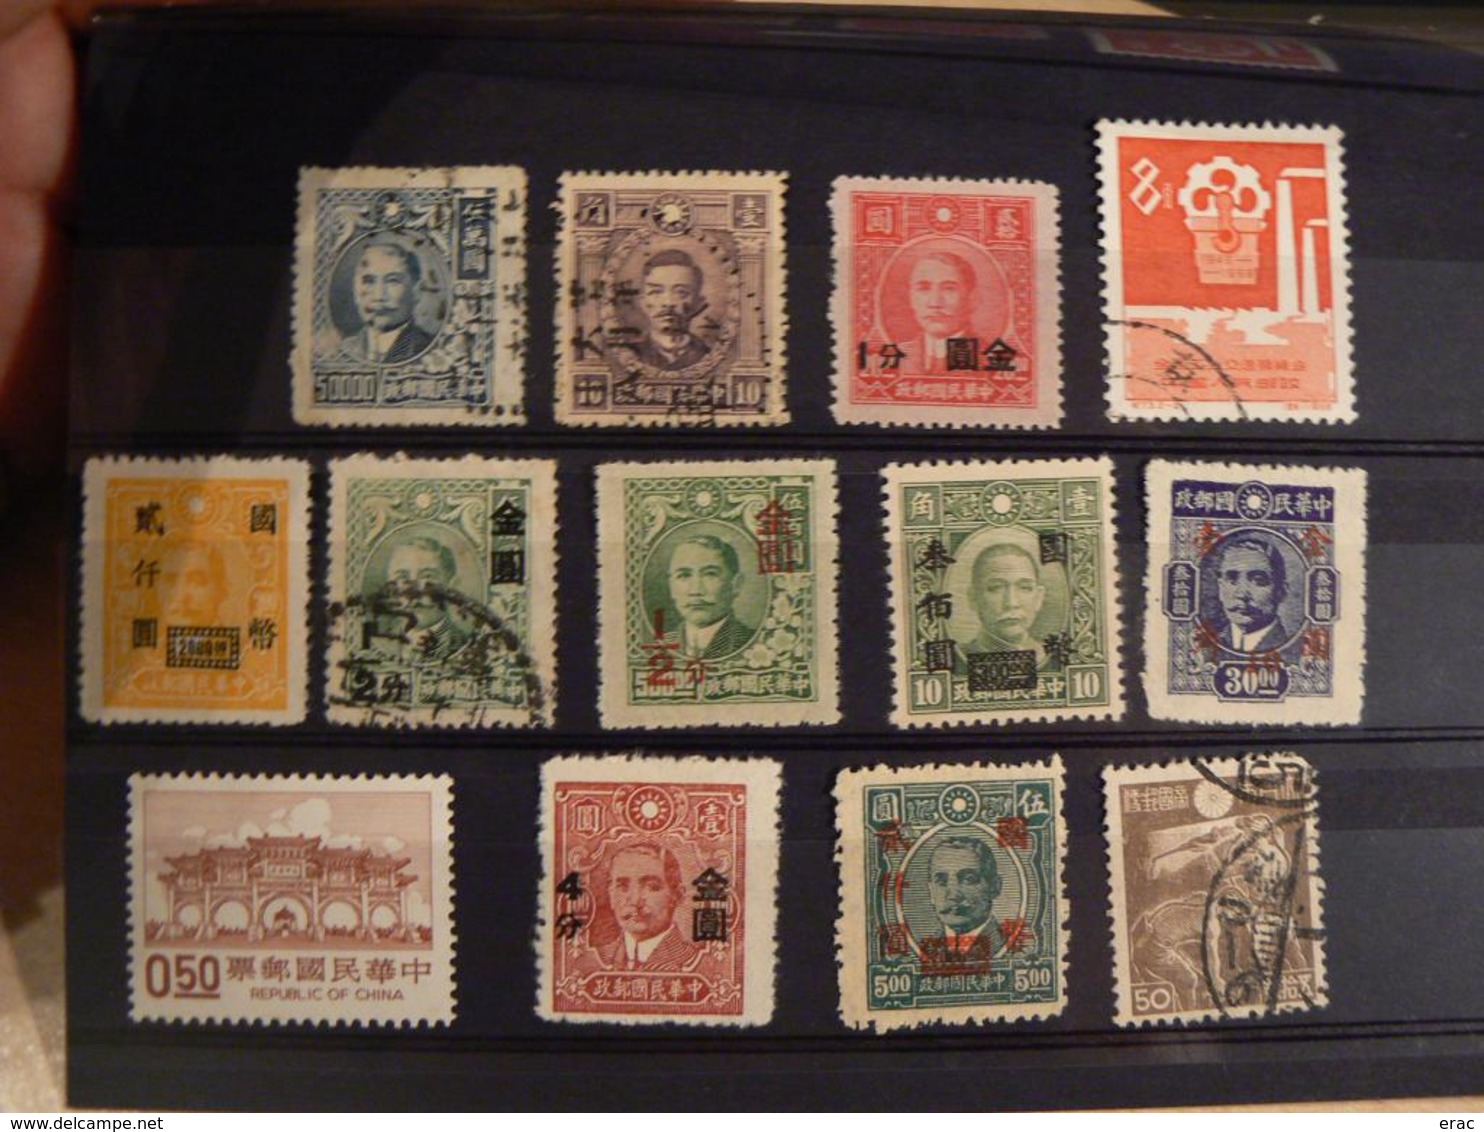 CHINE dont Chine impériale - Lot de timbres anciens et récents - Neufs et oblitérés - Cote +++